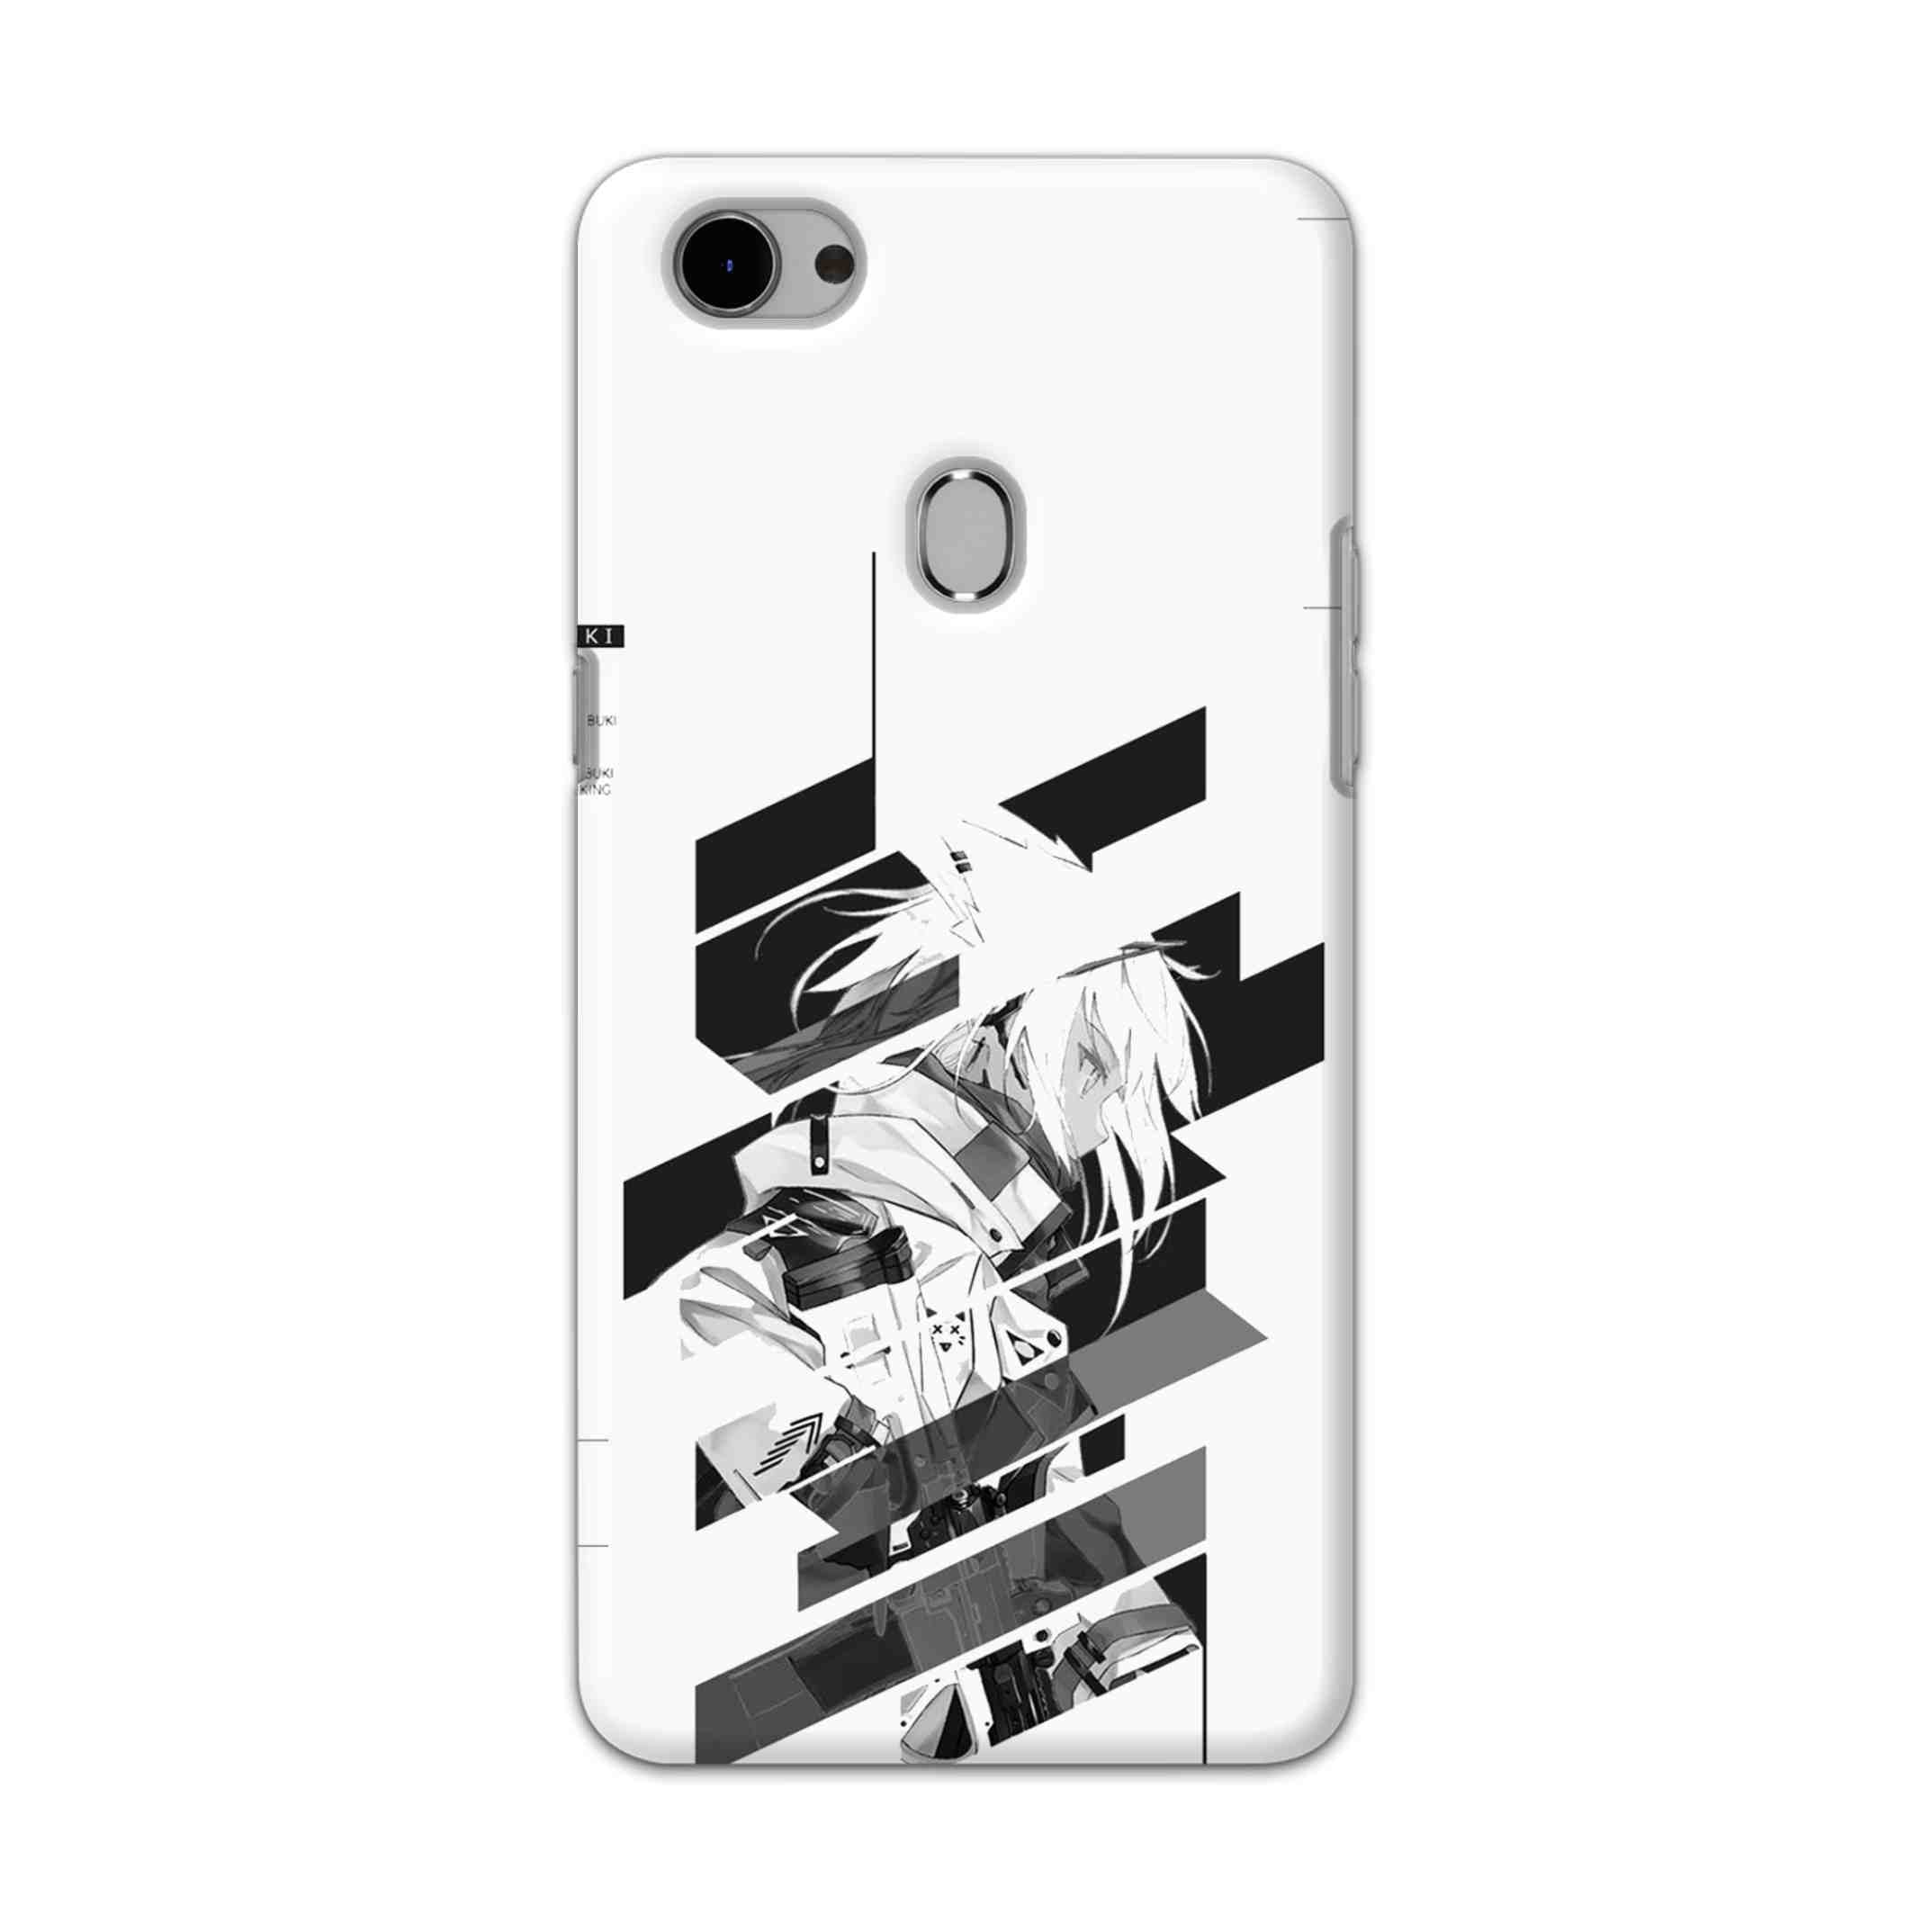 Buy Fubuki Hard Back Mobile Phone Case Cover For Oppo F7 Online